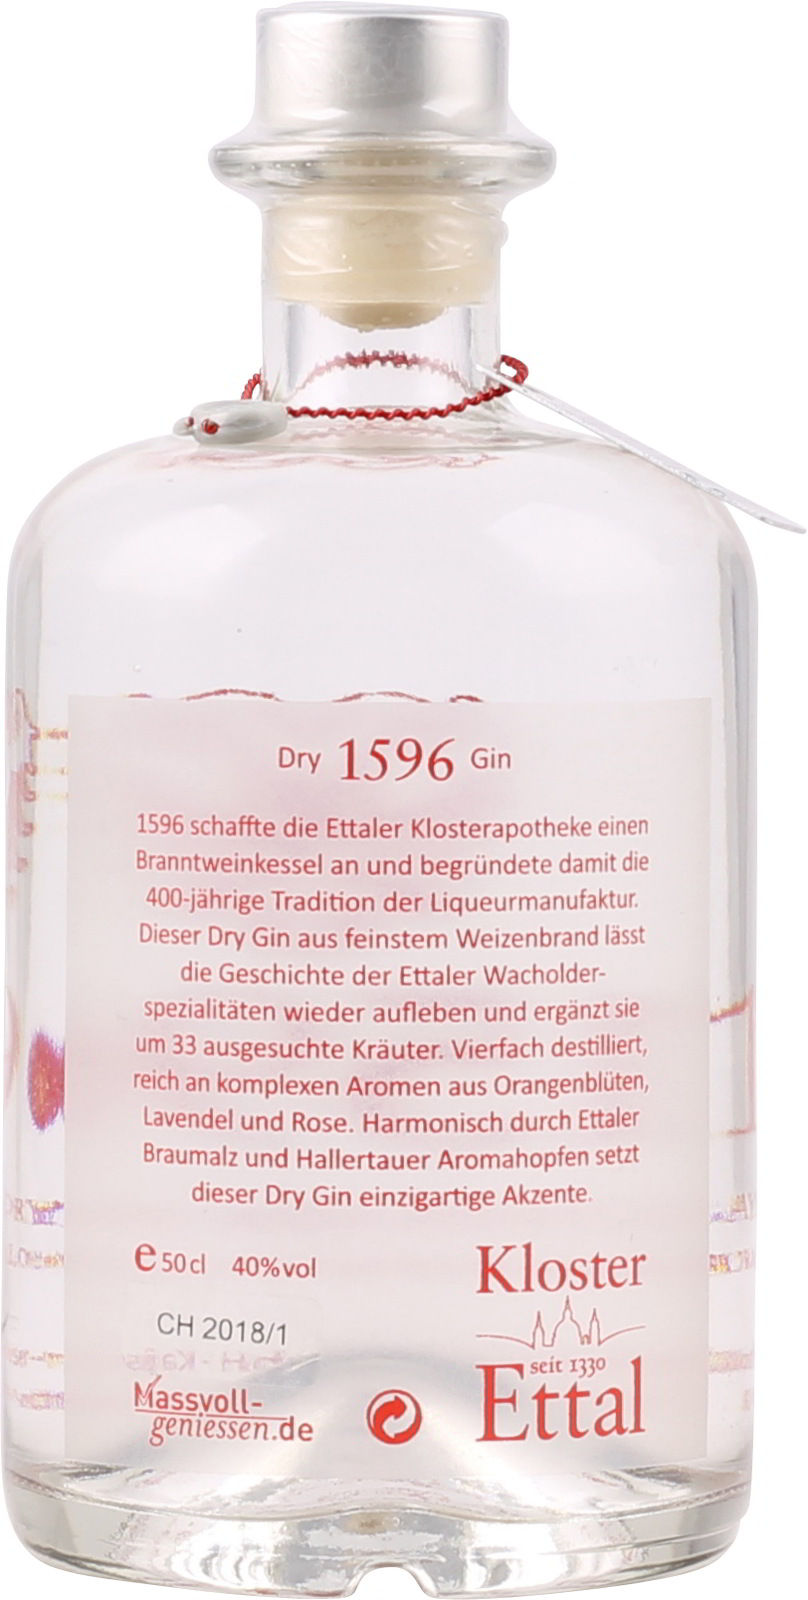 1596 Ettaler Bayerischer Dry Gin Vol. 40 0,5 Liter ei 